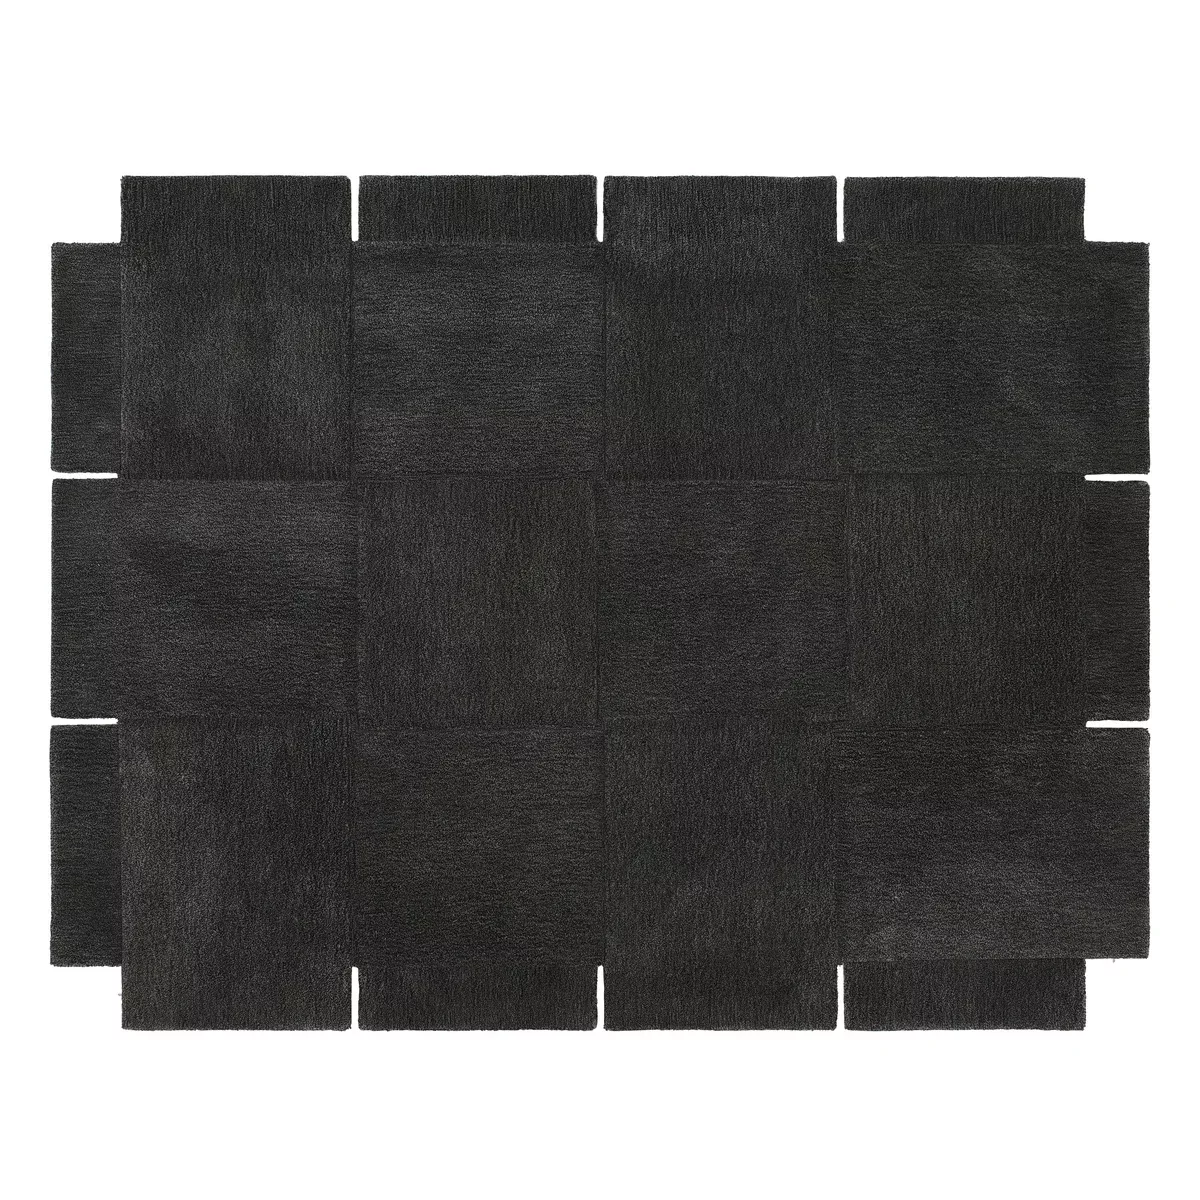 Basket Teppich, dunkel grau 185 x 240cm günstig online kaufen